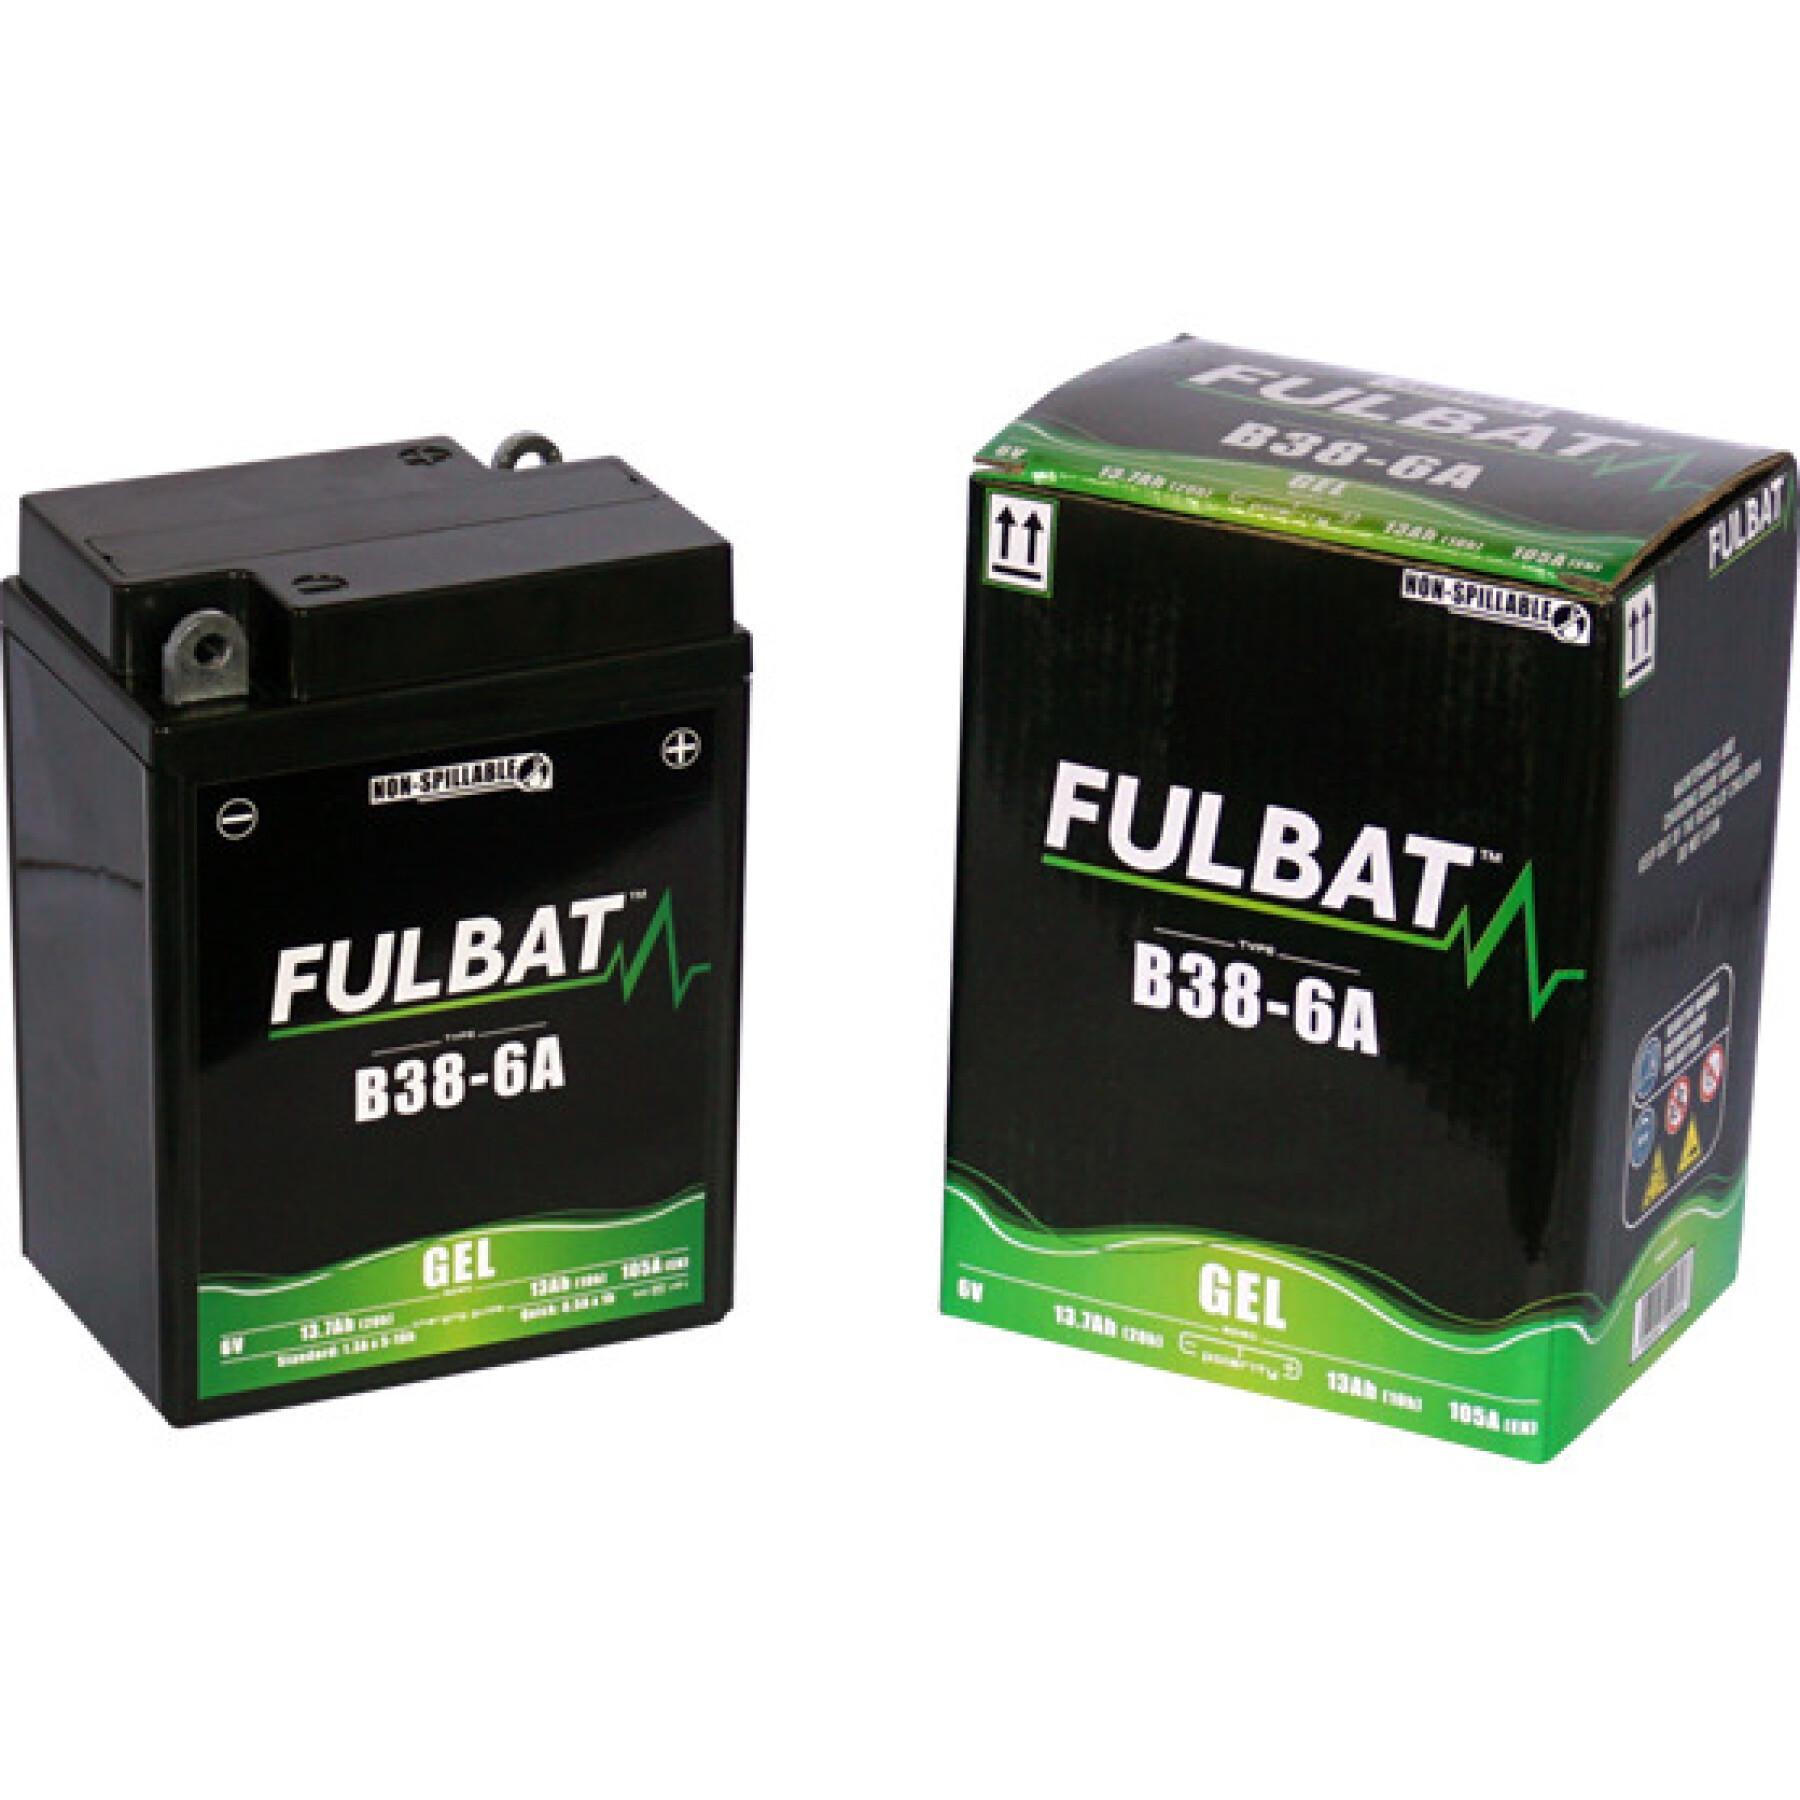 Battery Fulbat B38-6A Gel